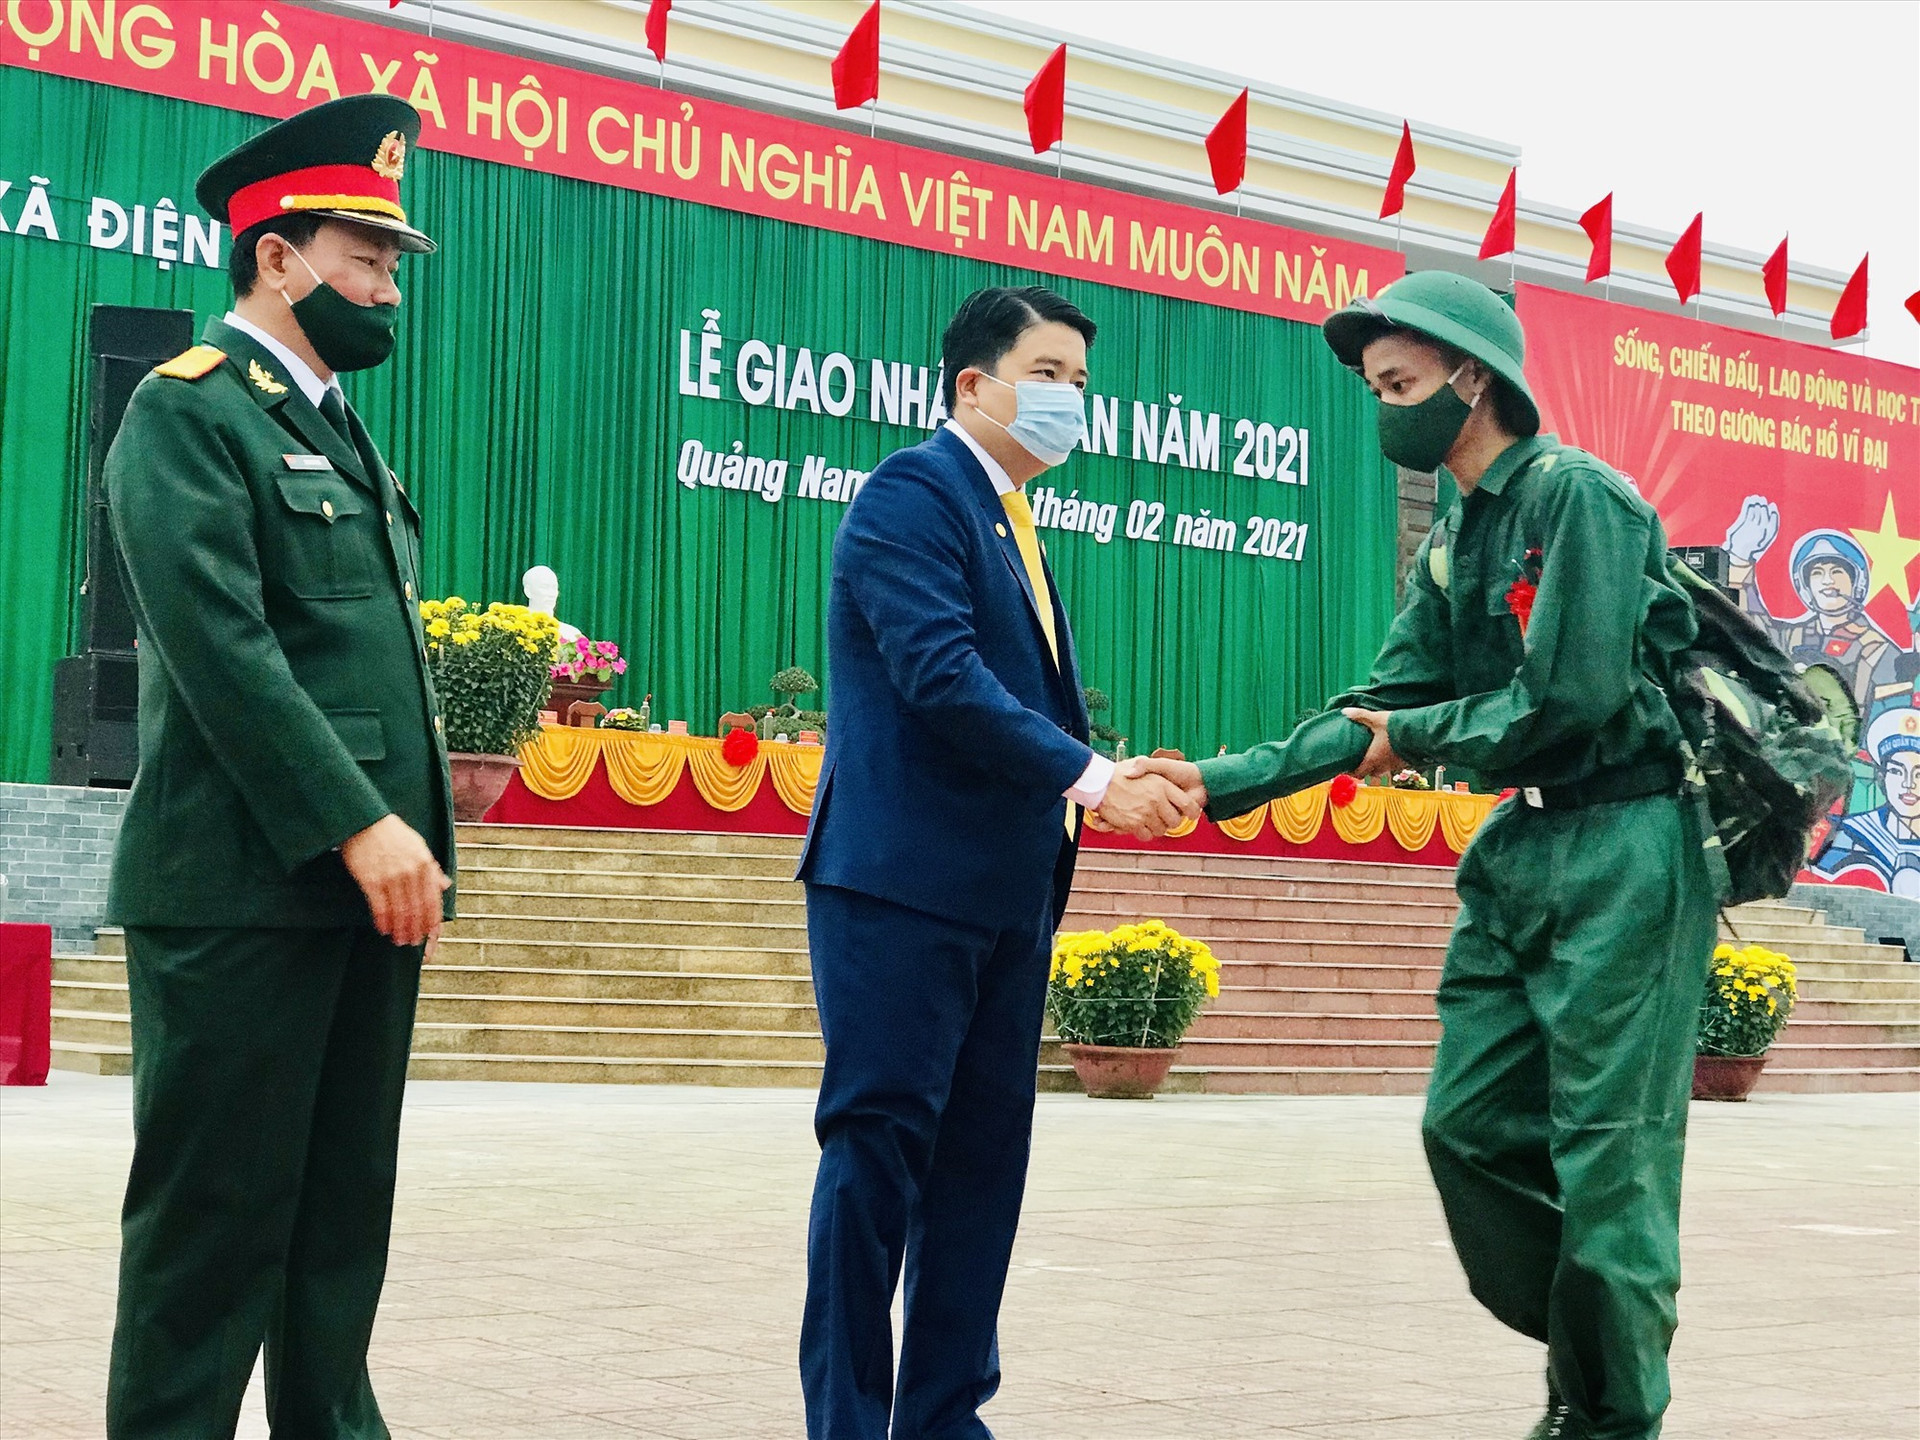 Phó Chủ tịch UBND tỉnh Trần Văn Tân bắt tay động viên tân binh lên đường nhập ngũ. Ảnh: Q.T